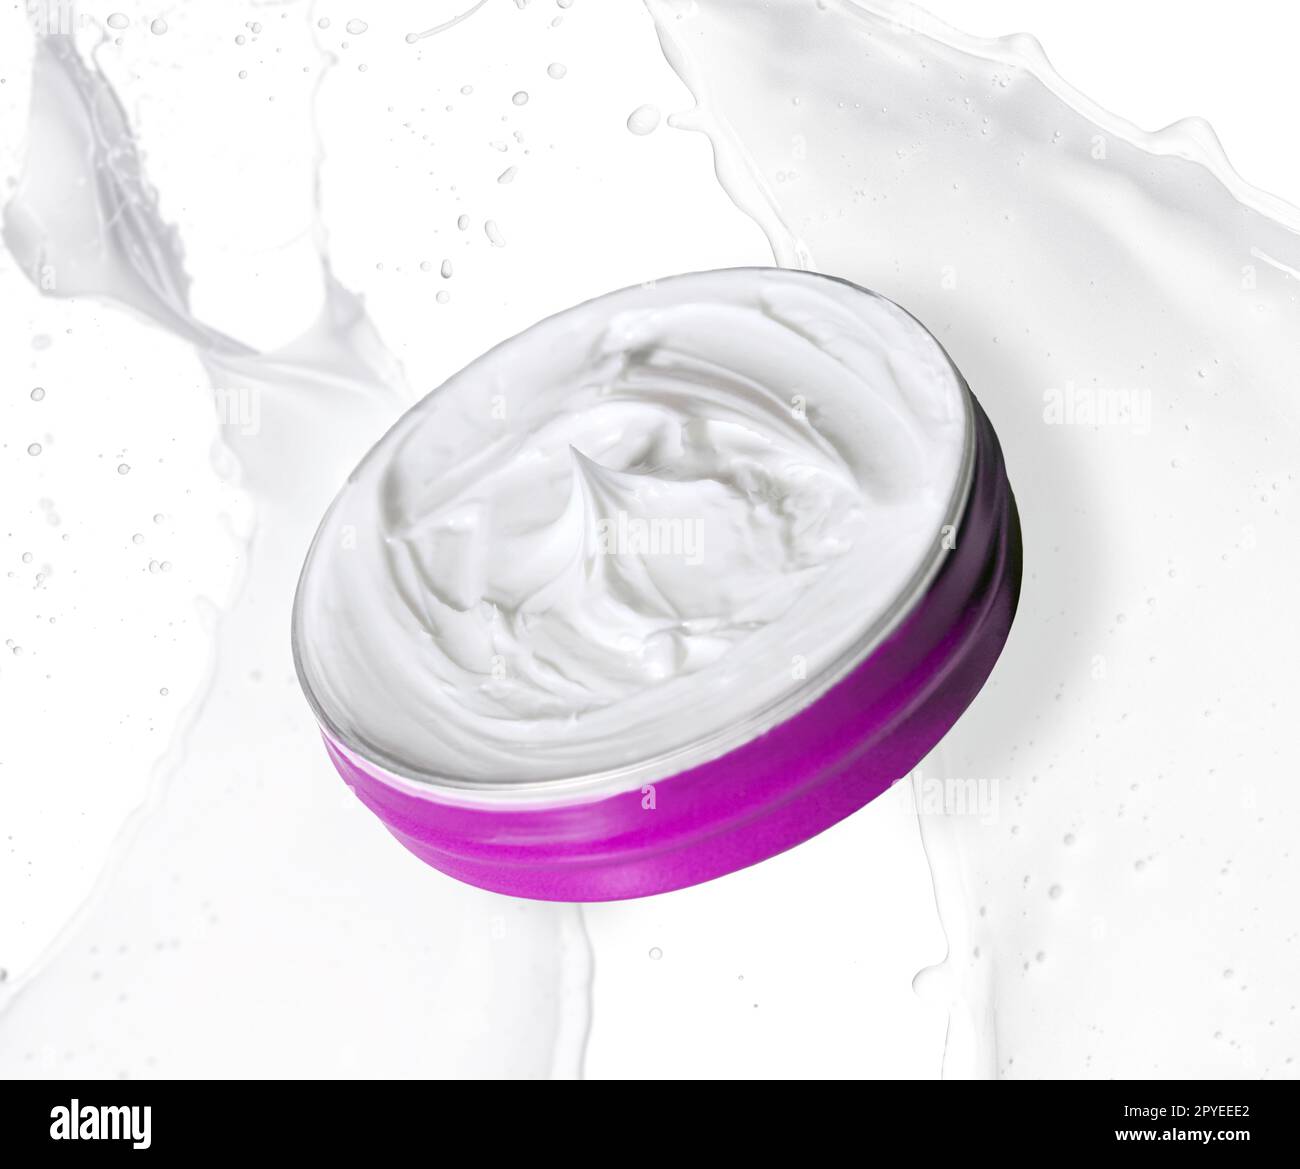 Generische weiße Creme für Kosmetika. Foto anpassbar an jedes Produkt zu werben. Stockfoto